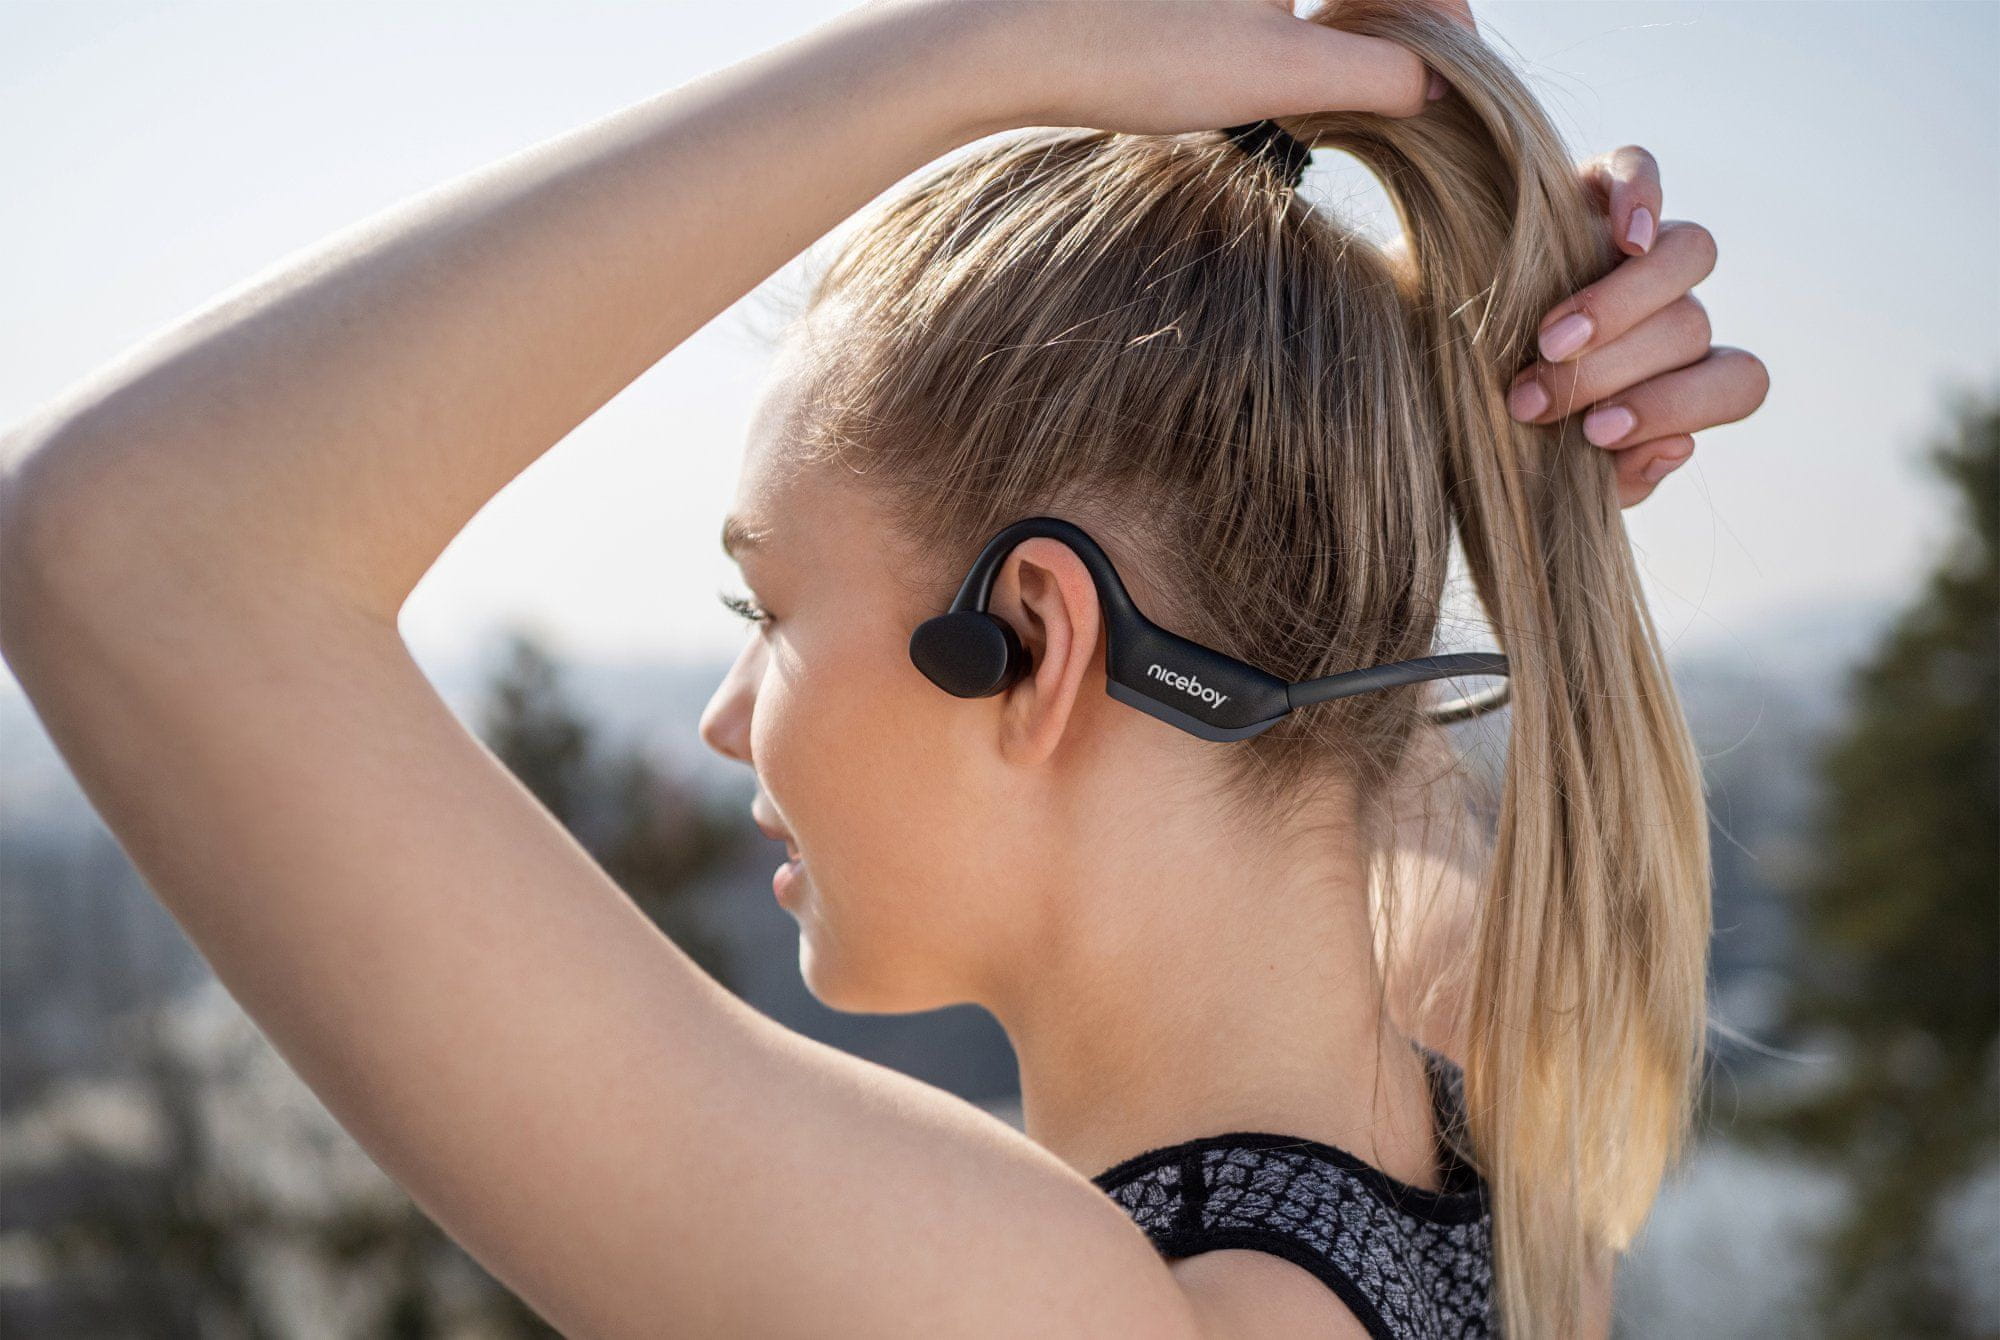  Bluetooth 5.0 sport fejhallgató niceboy hive bones 2 kiváló hangzás könnyű súly vízálló ip55 sportolásra alkalmas 8 órás akkumulátor élettartam aac codec a2dp profil 